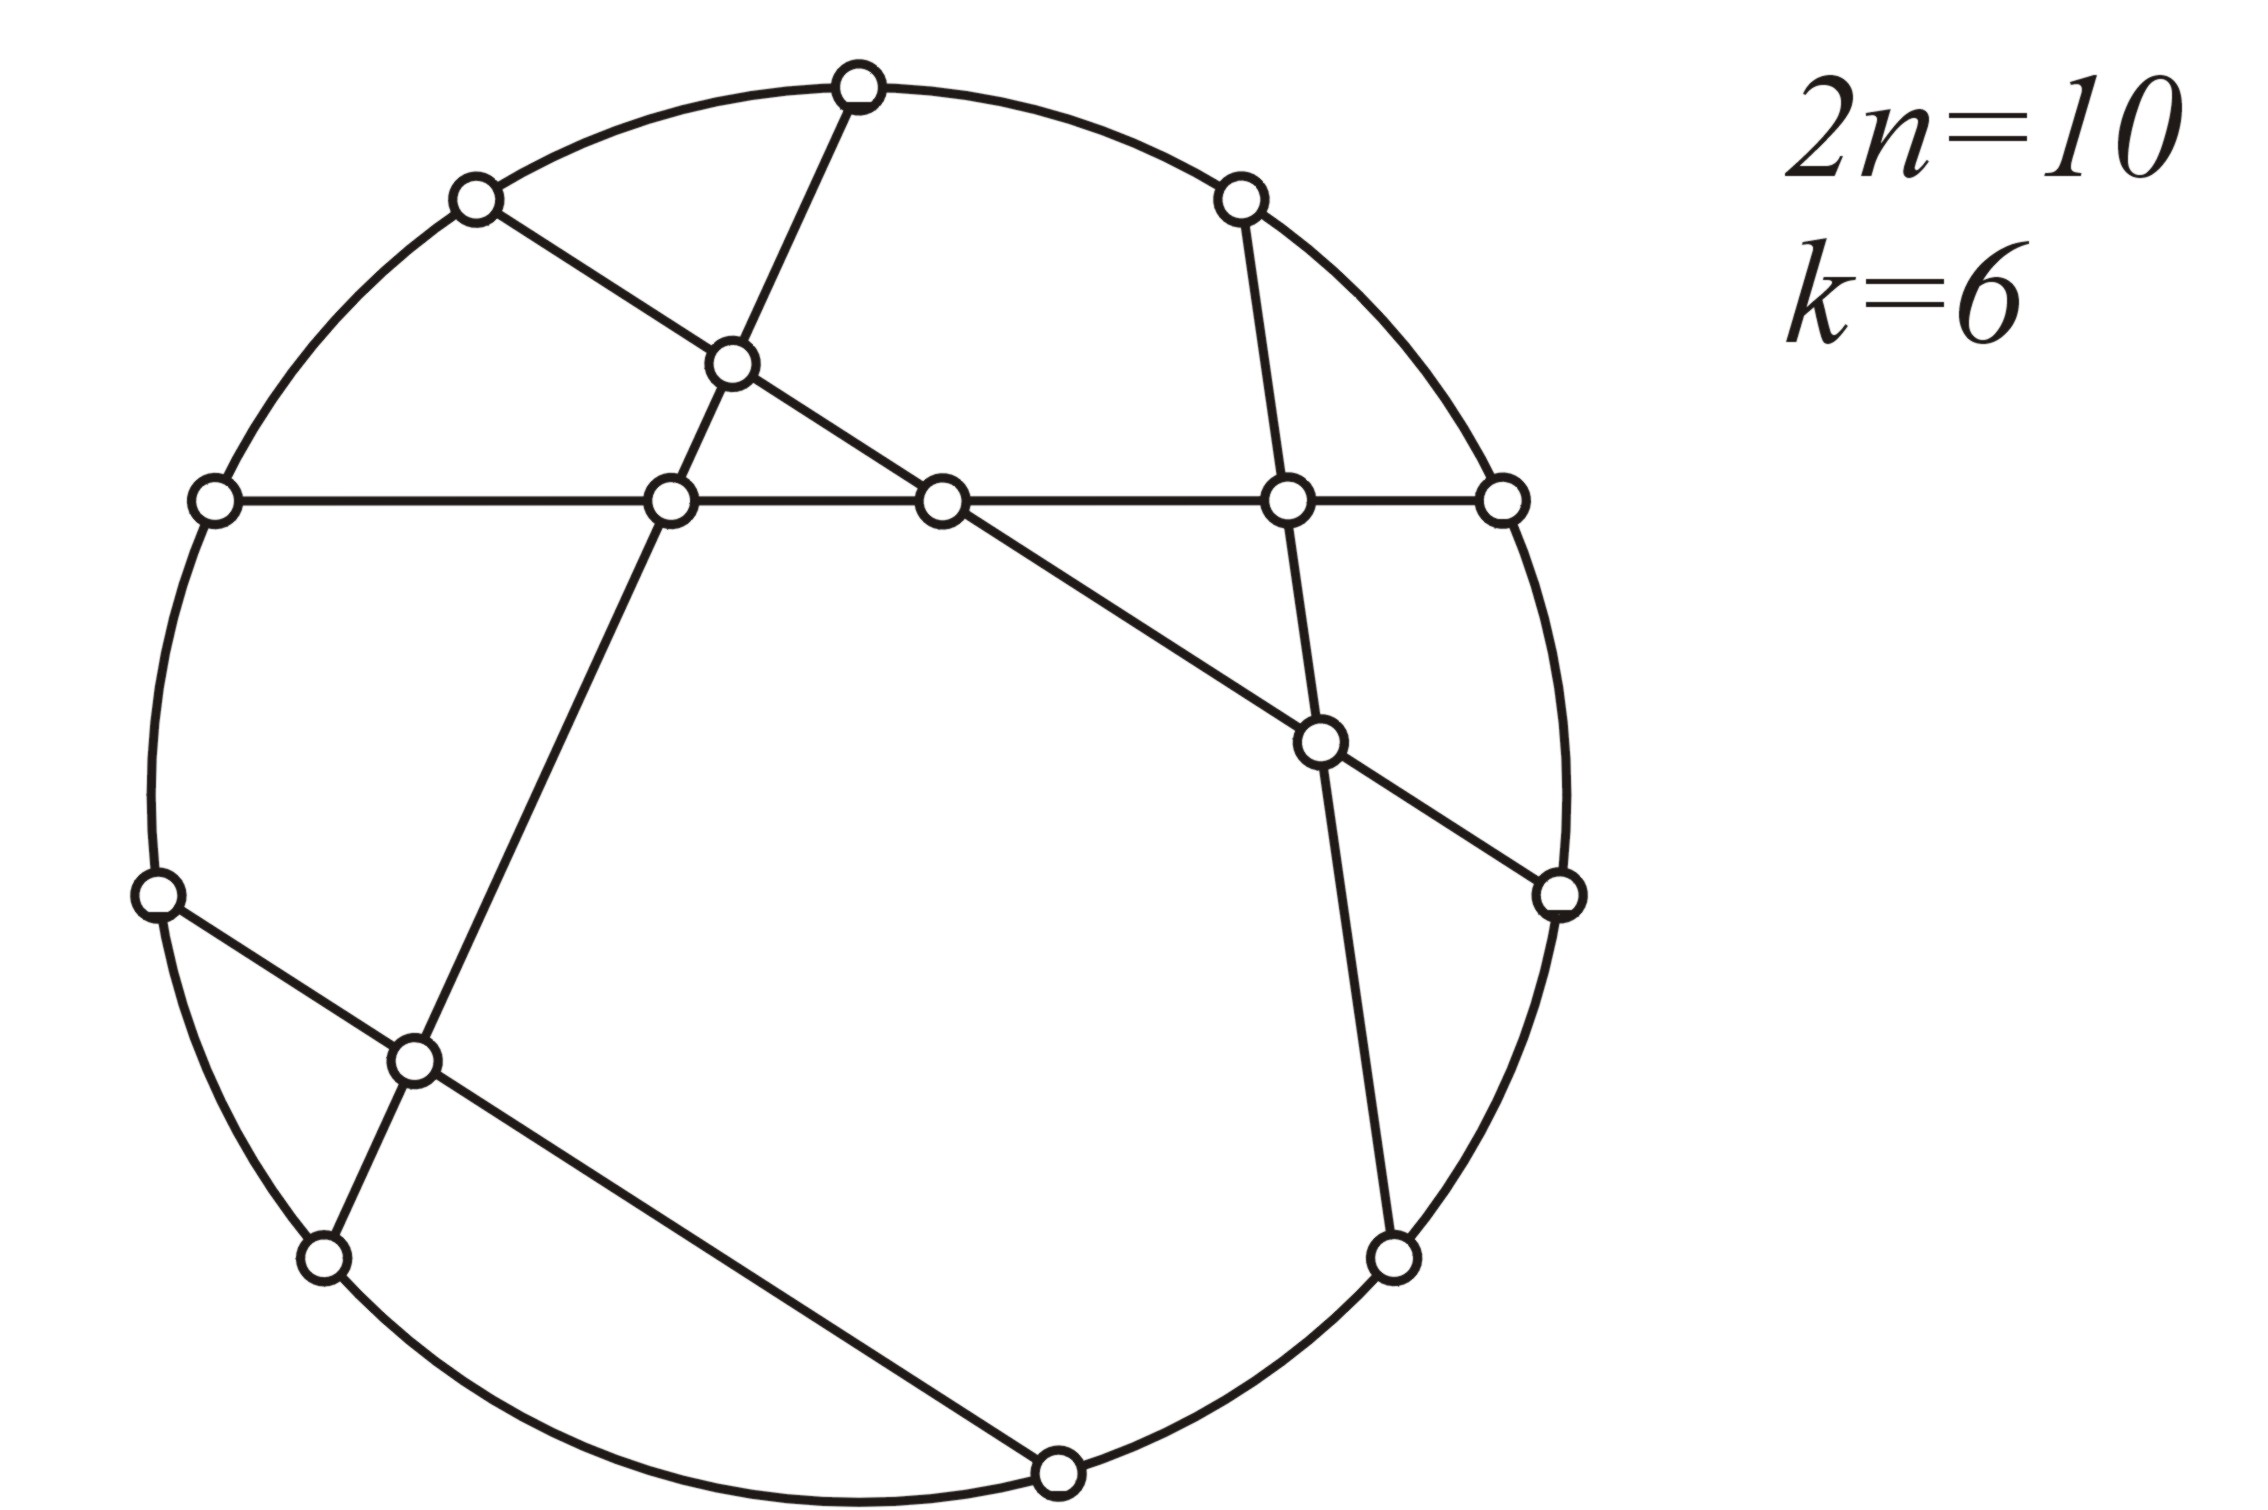 Elimizdeki şekli v = 2n+k düğüm noktasına sahip bir çizge olarak düşünebiliriz.